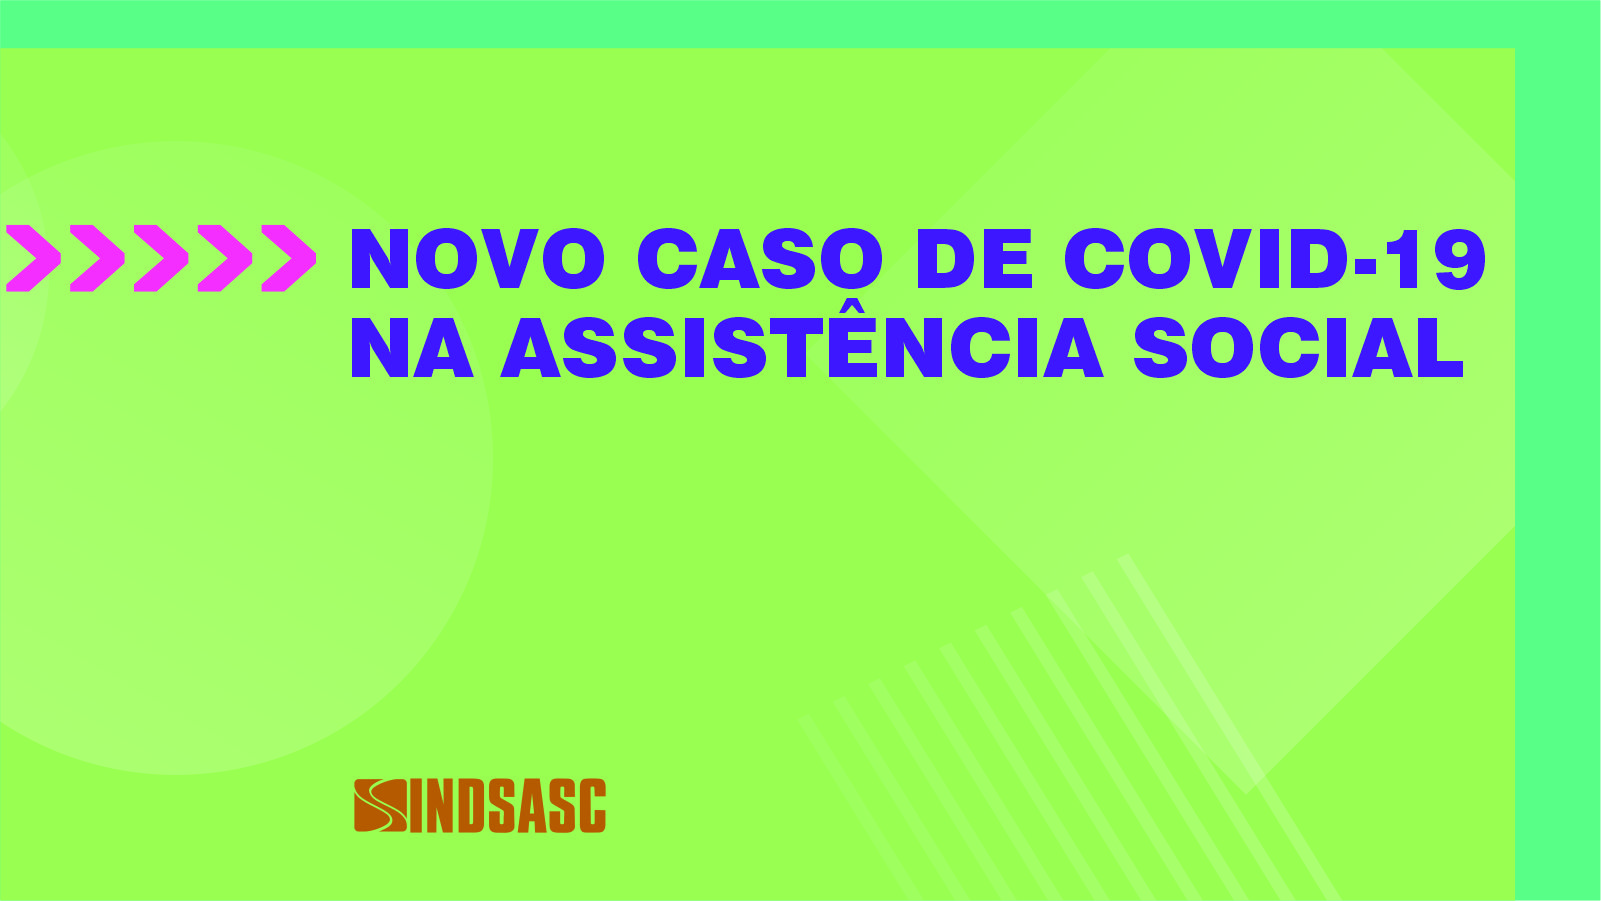 NOVO CASO DE COVID-19 NA ASSISTÊNCIA SOCIAL